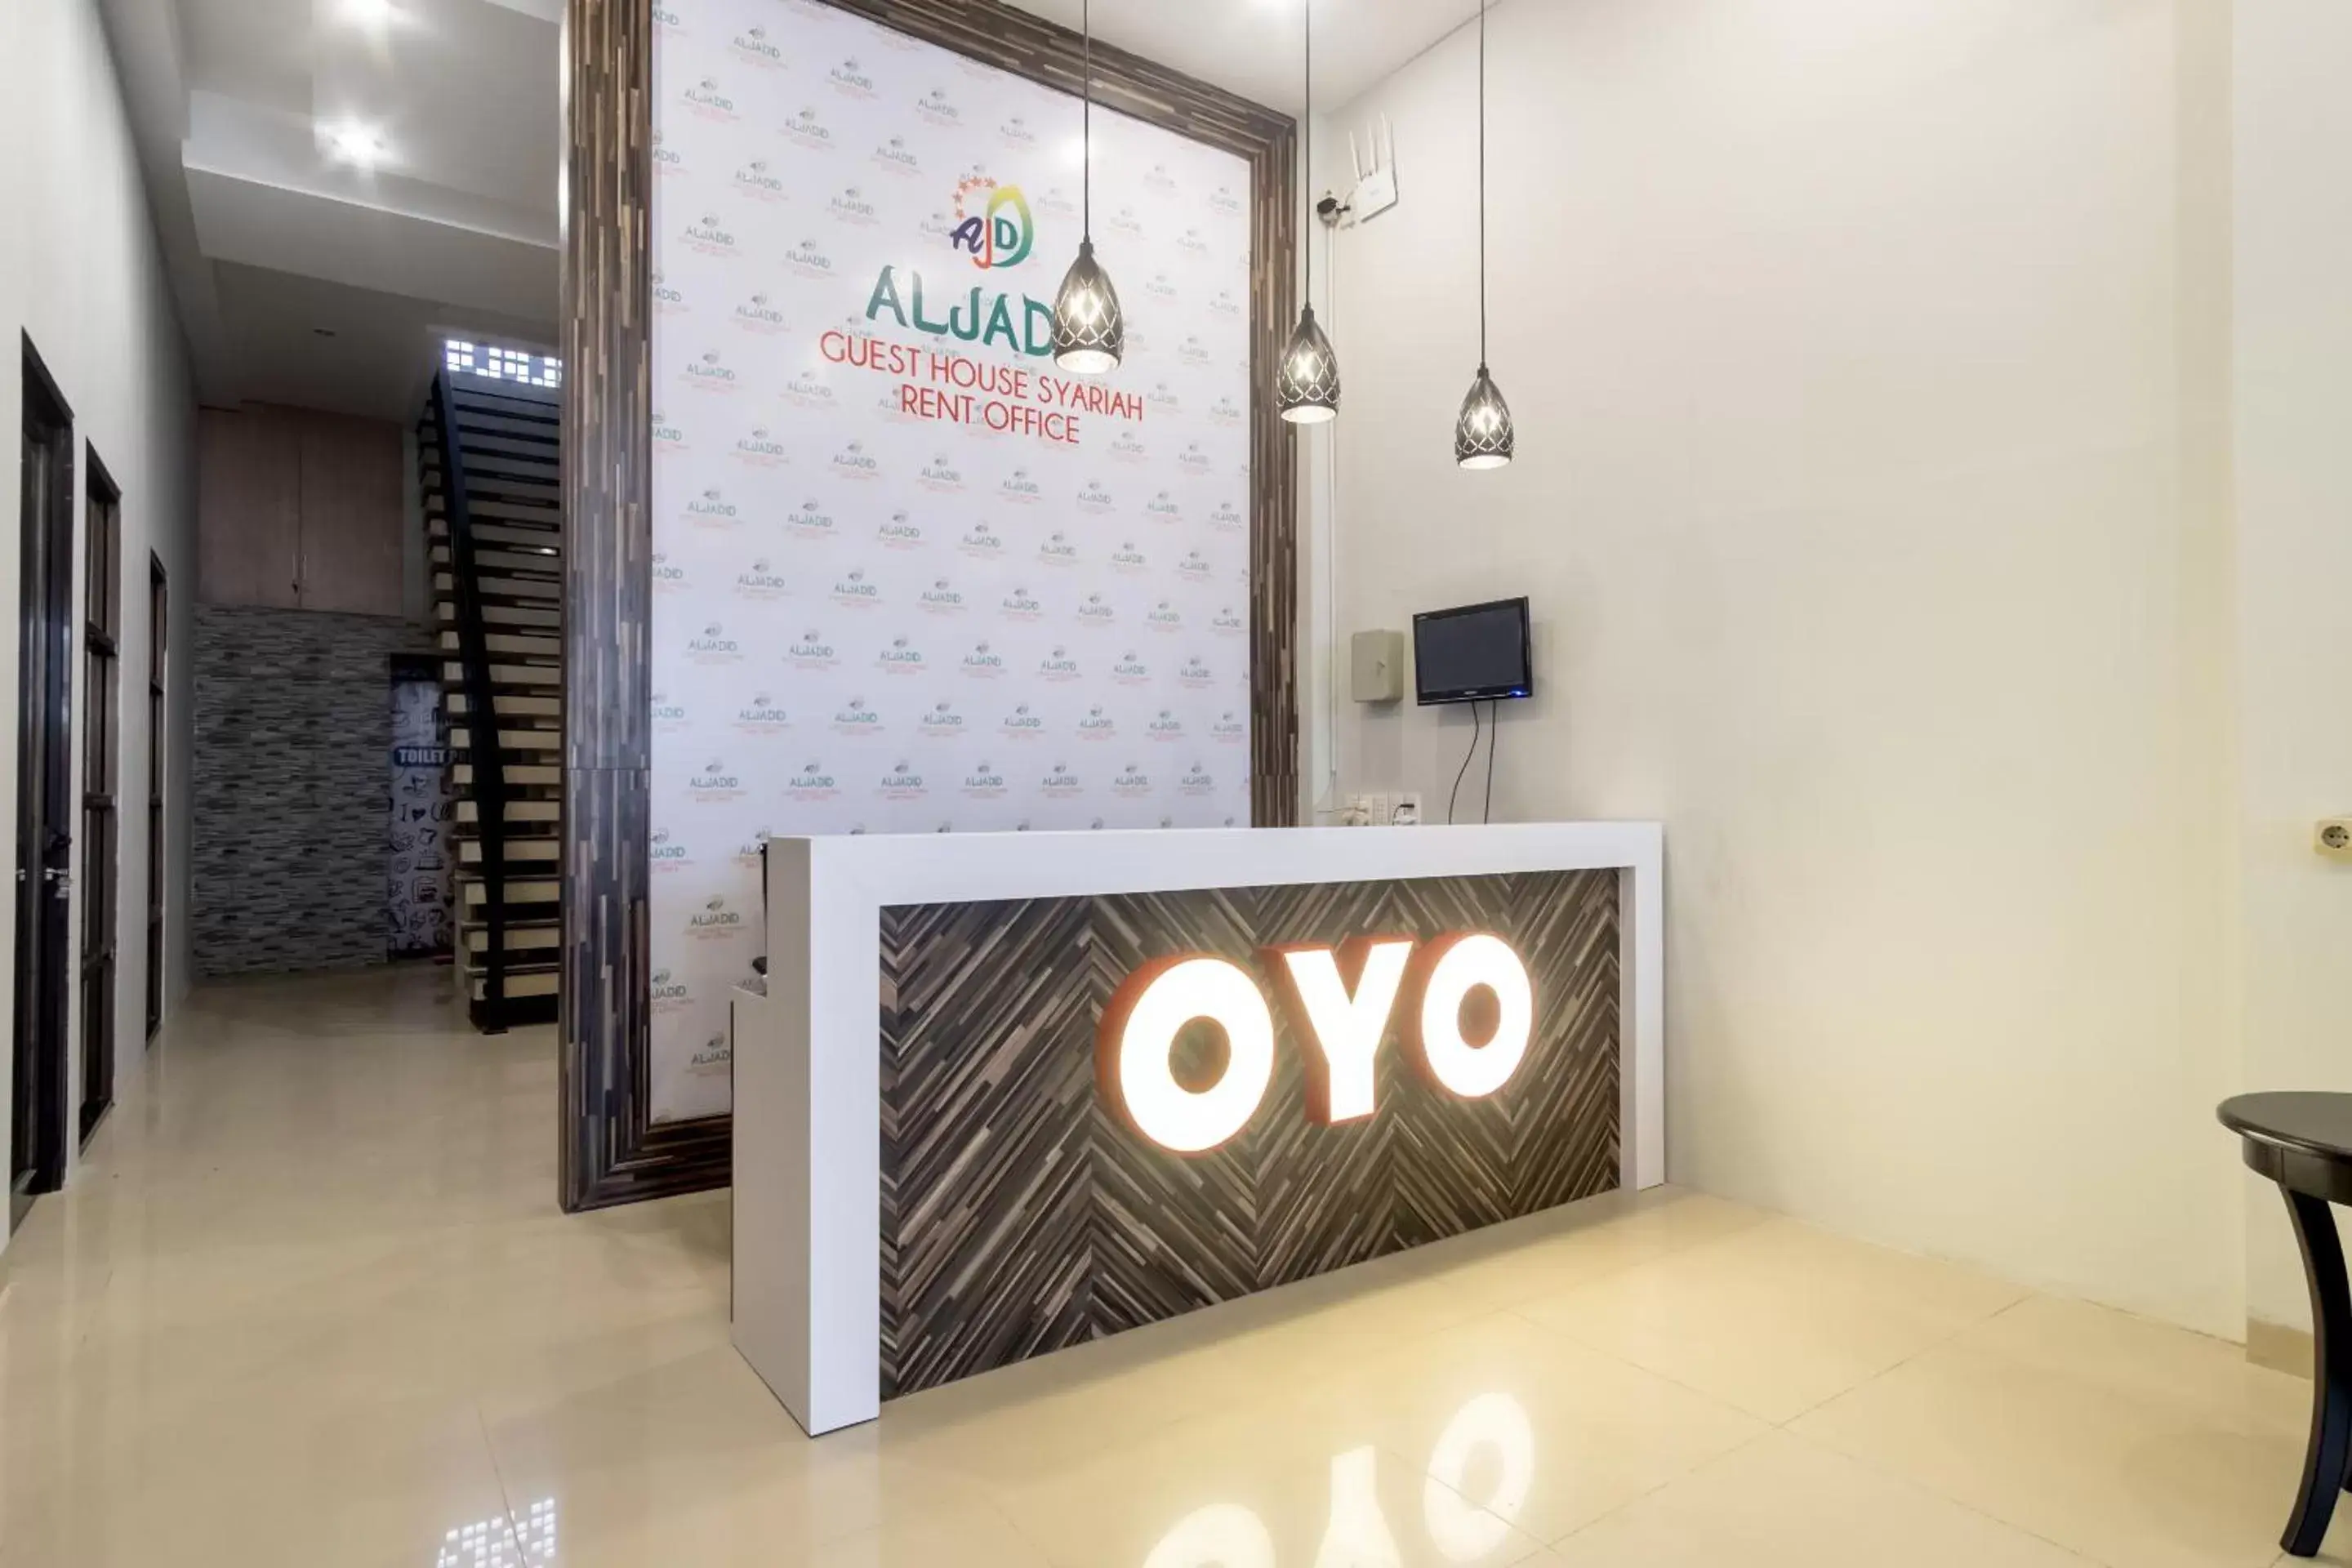 Lobby or reception, Lobby/Reception in SUPER OYO 456 Aljadid Guest House Syariah